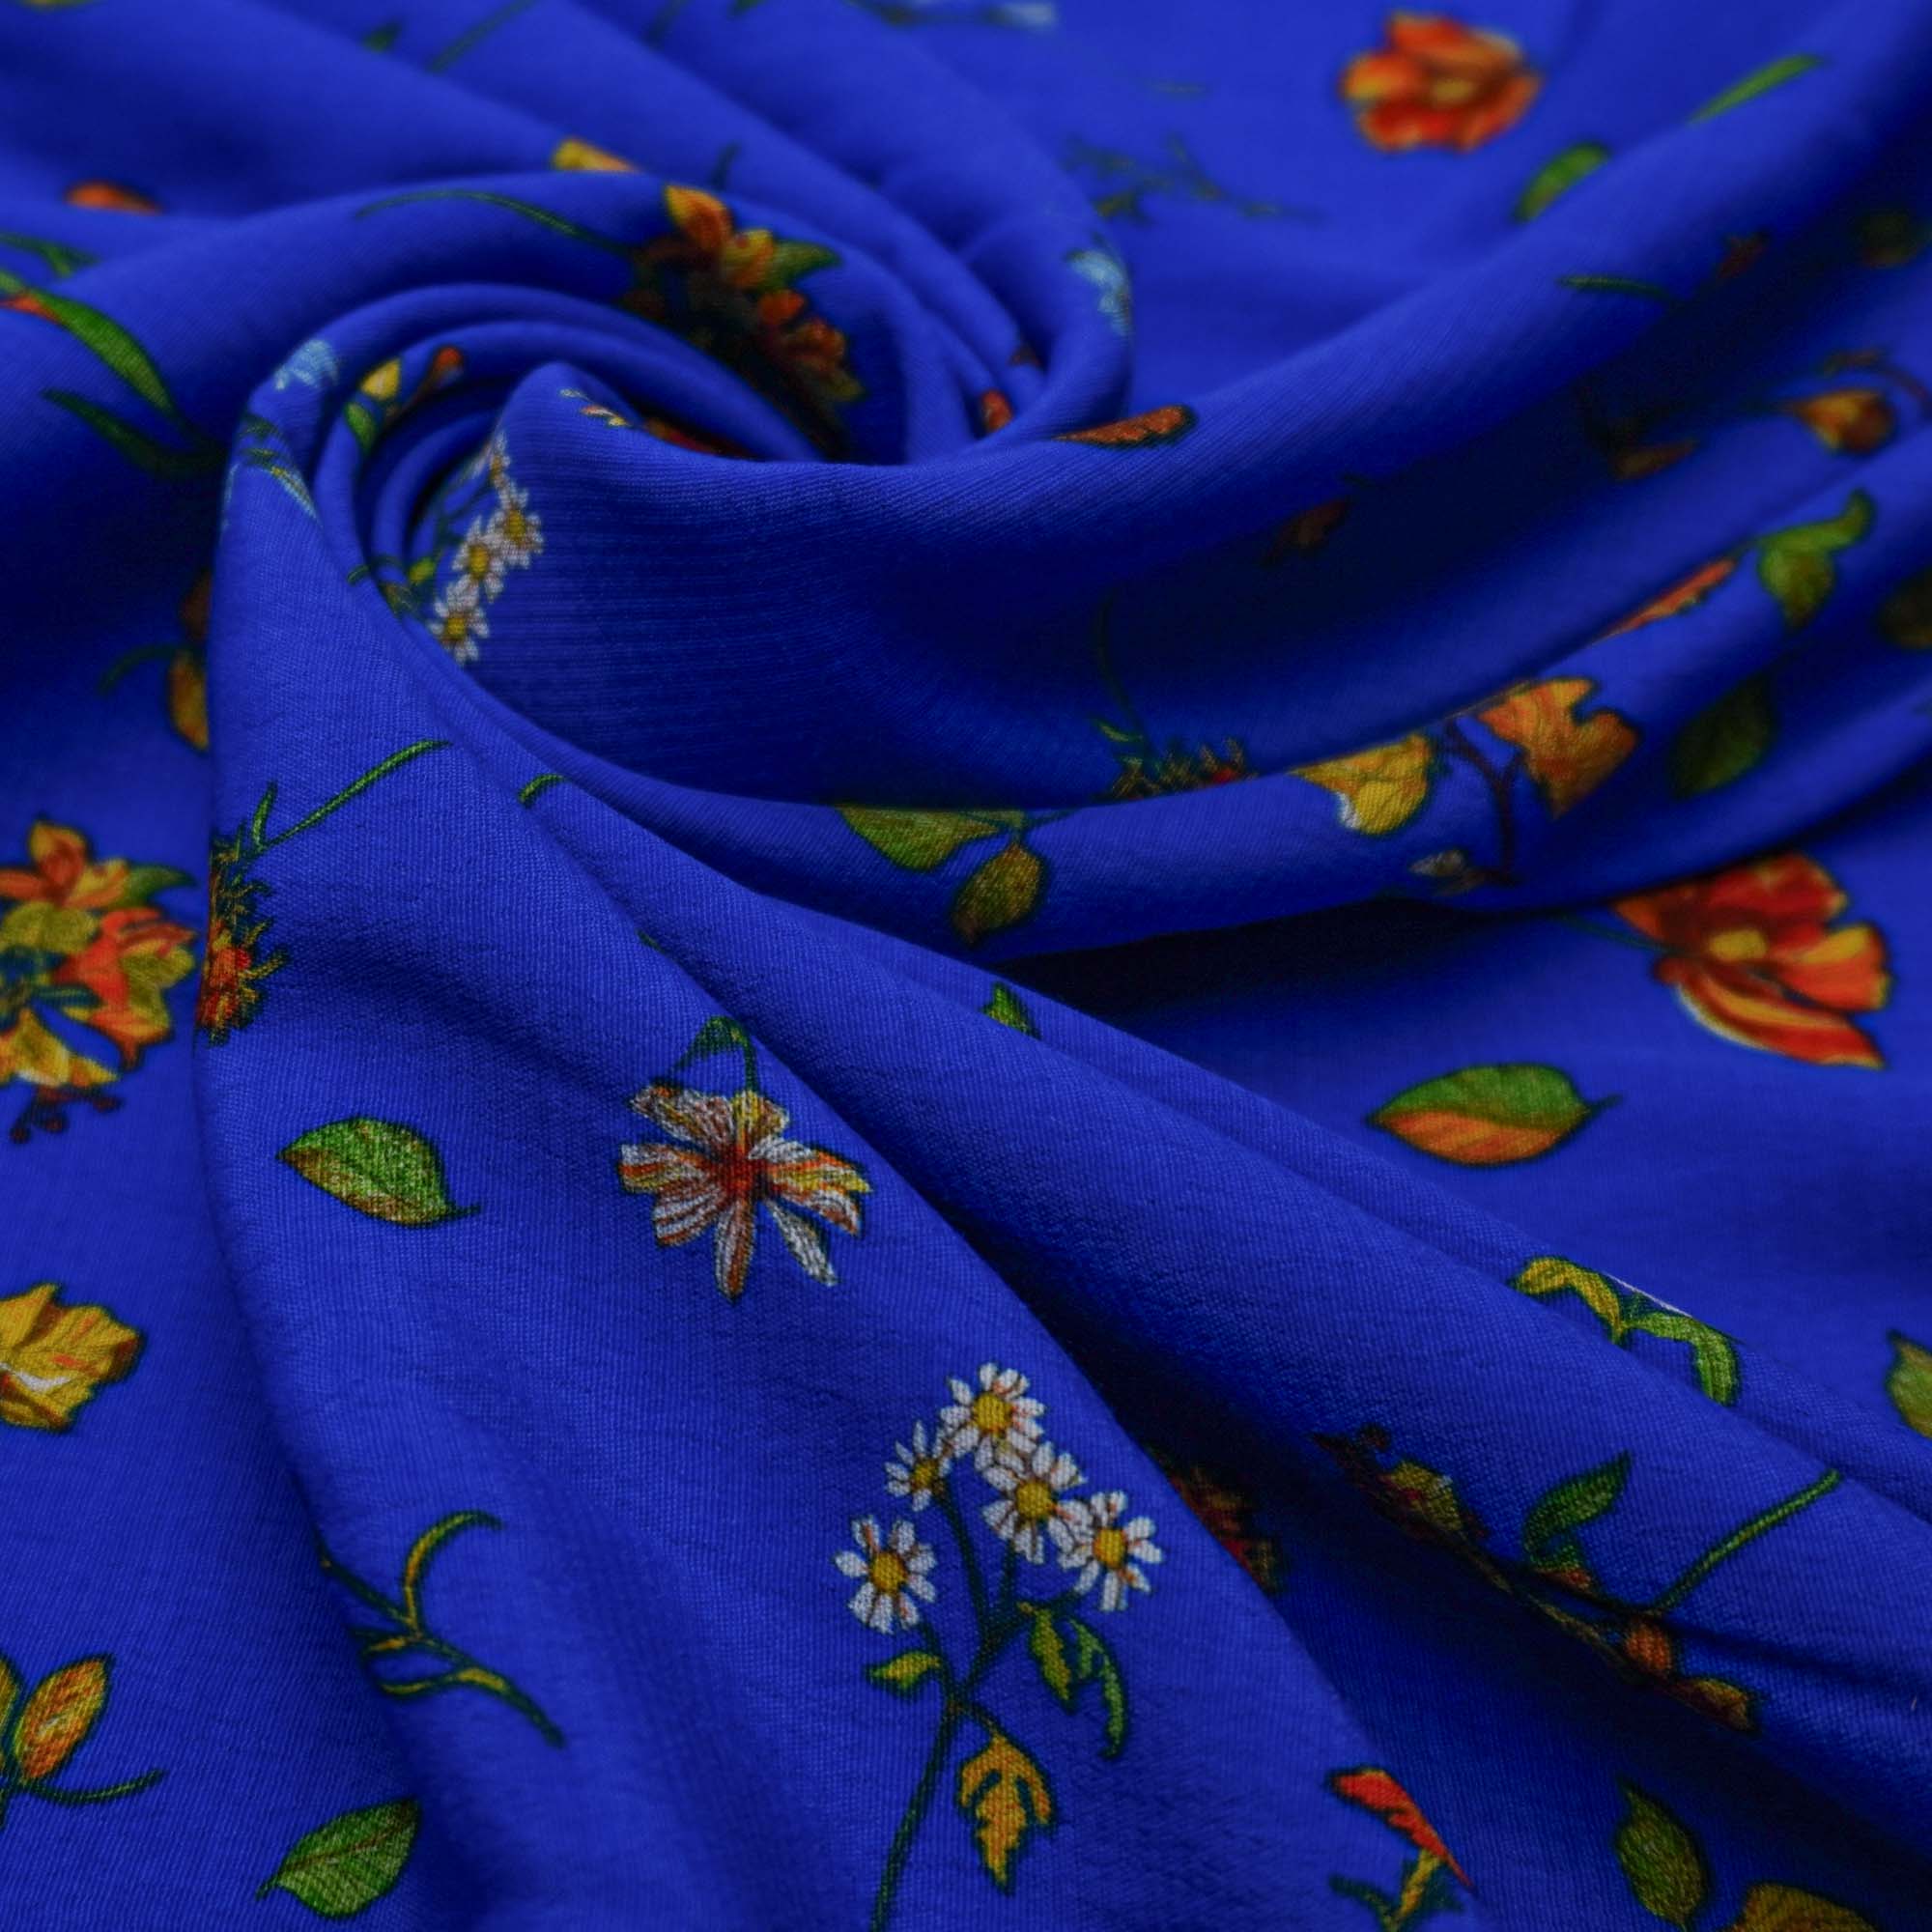 Tecido viscose azul royal estampado floral (tecido italiano legítimo)